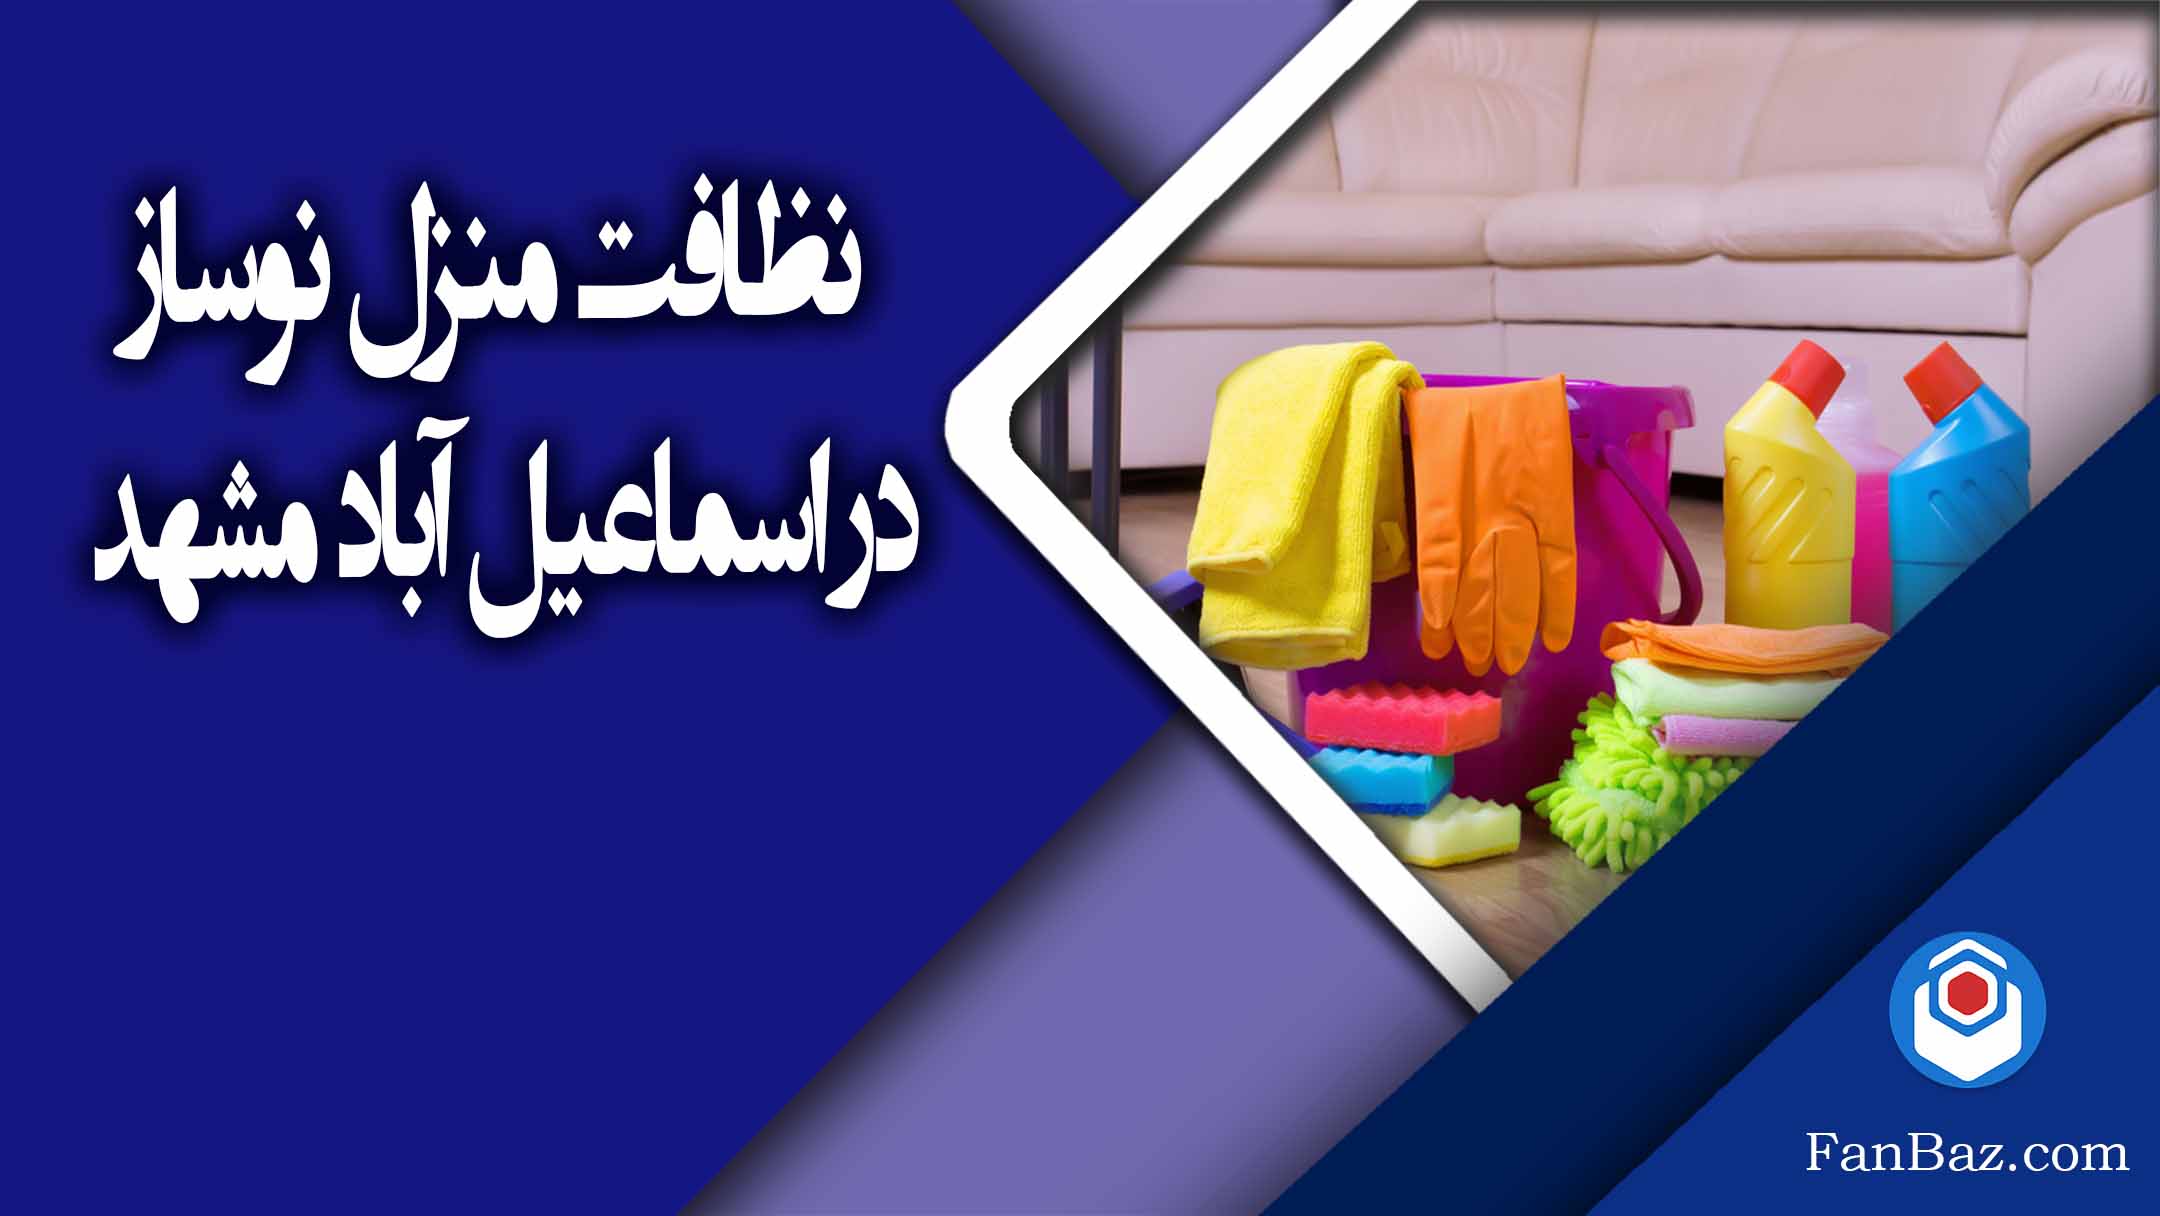 نظافت منزل تخلیه و صفر در اسماعیل آباد مشهد